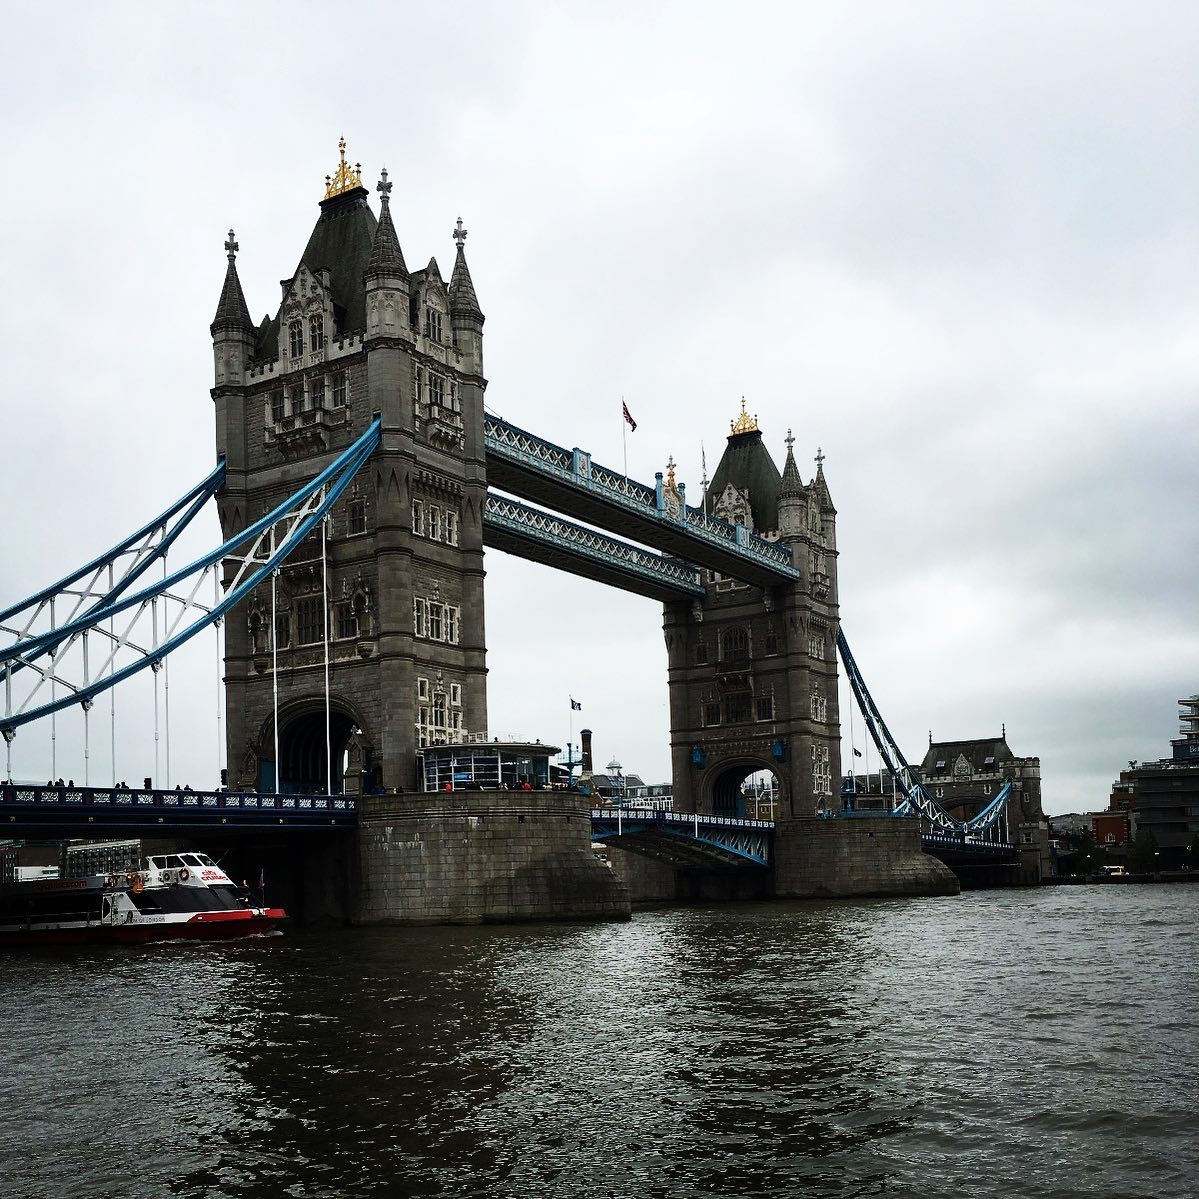 #London, die geilste Stadt der Welt, oder?

#london #hauptstadt #england #placetobe #bestplacestogo #bestplace #yourshotphotographer #travelphotography #traveltheworld #urlaub #reiselust #reisenmachtglücklich #picoftheday #towerbridge #reisefieber #citytrip